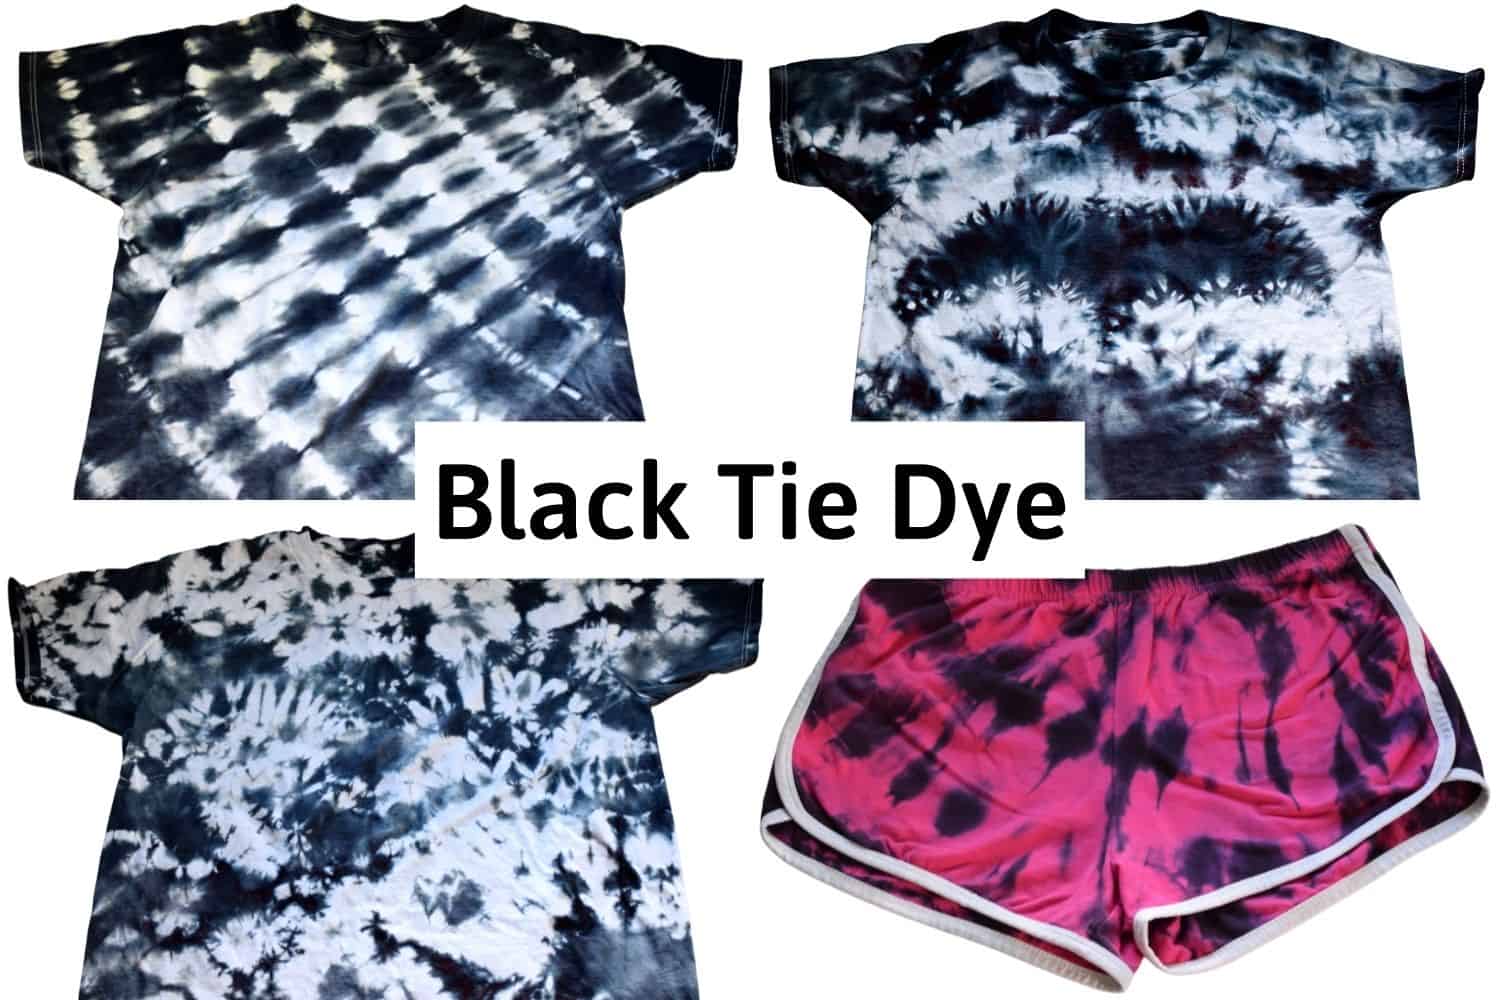 Tie Dye Designs: 3 Red and Black Spirals 